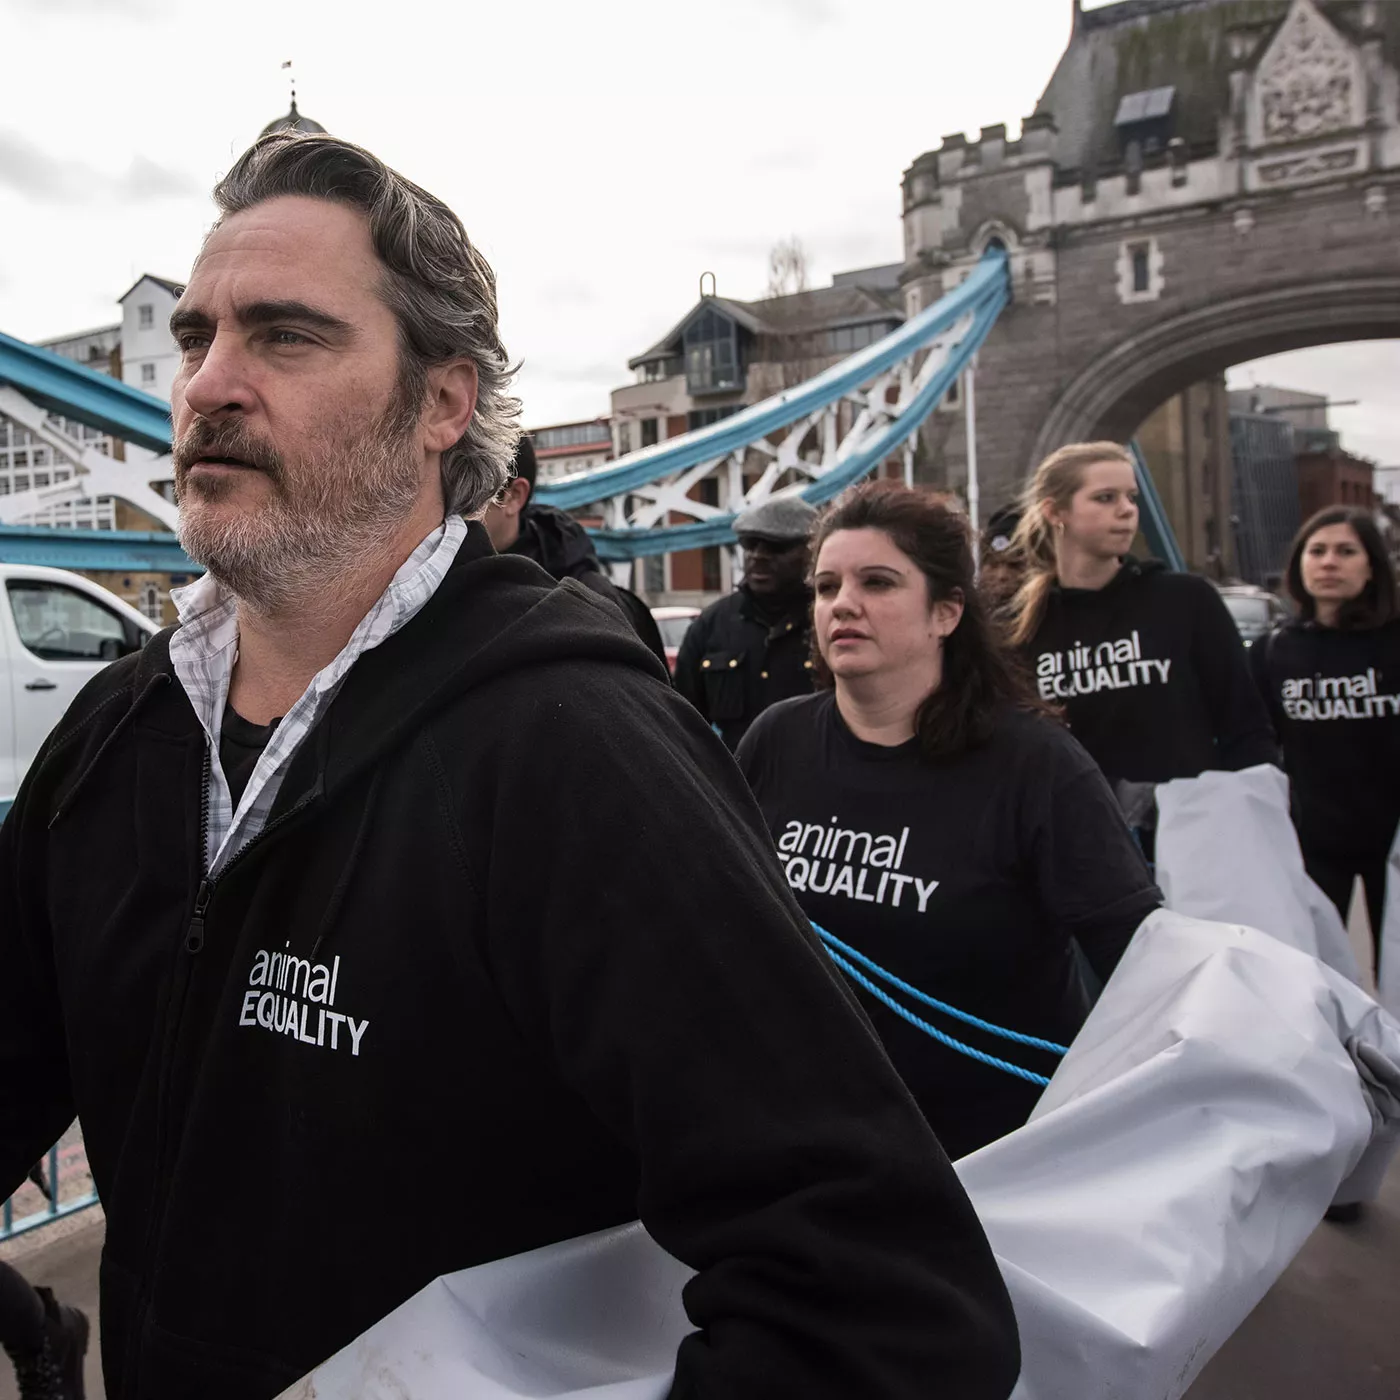 Joaquin Phoenix protesta junto con activistas de Igualdad Animal en el Puente de Londres y camina cargando la pancarta